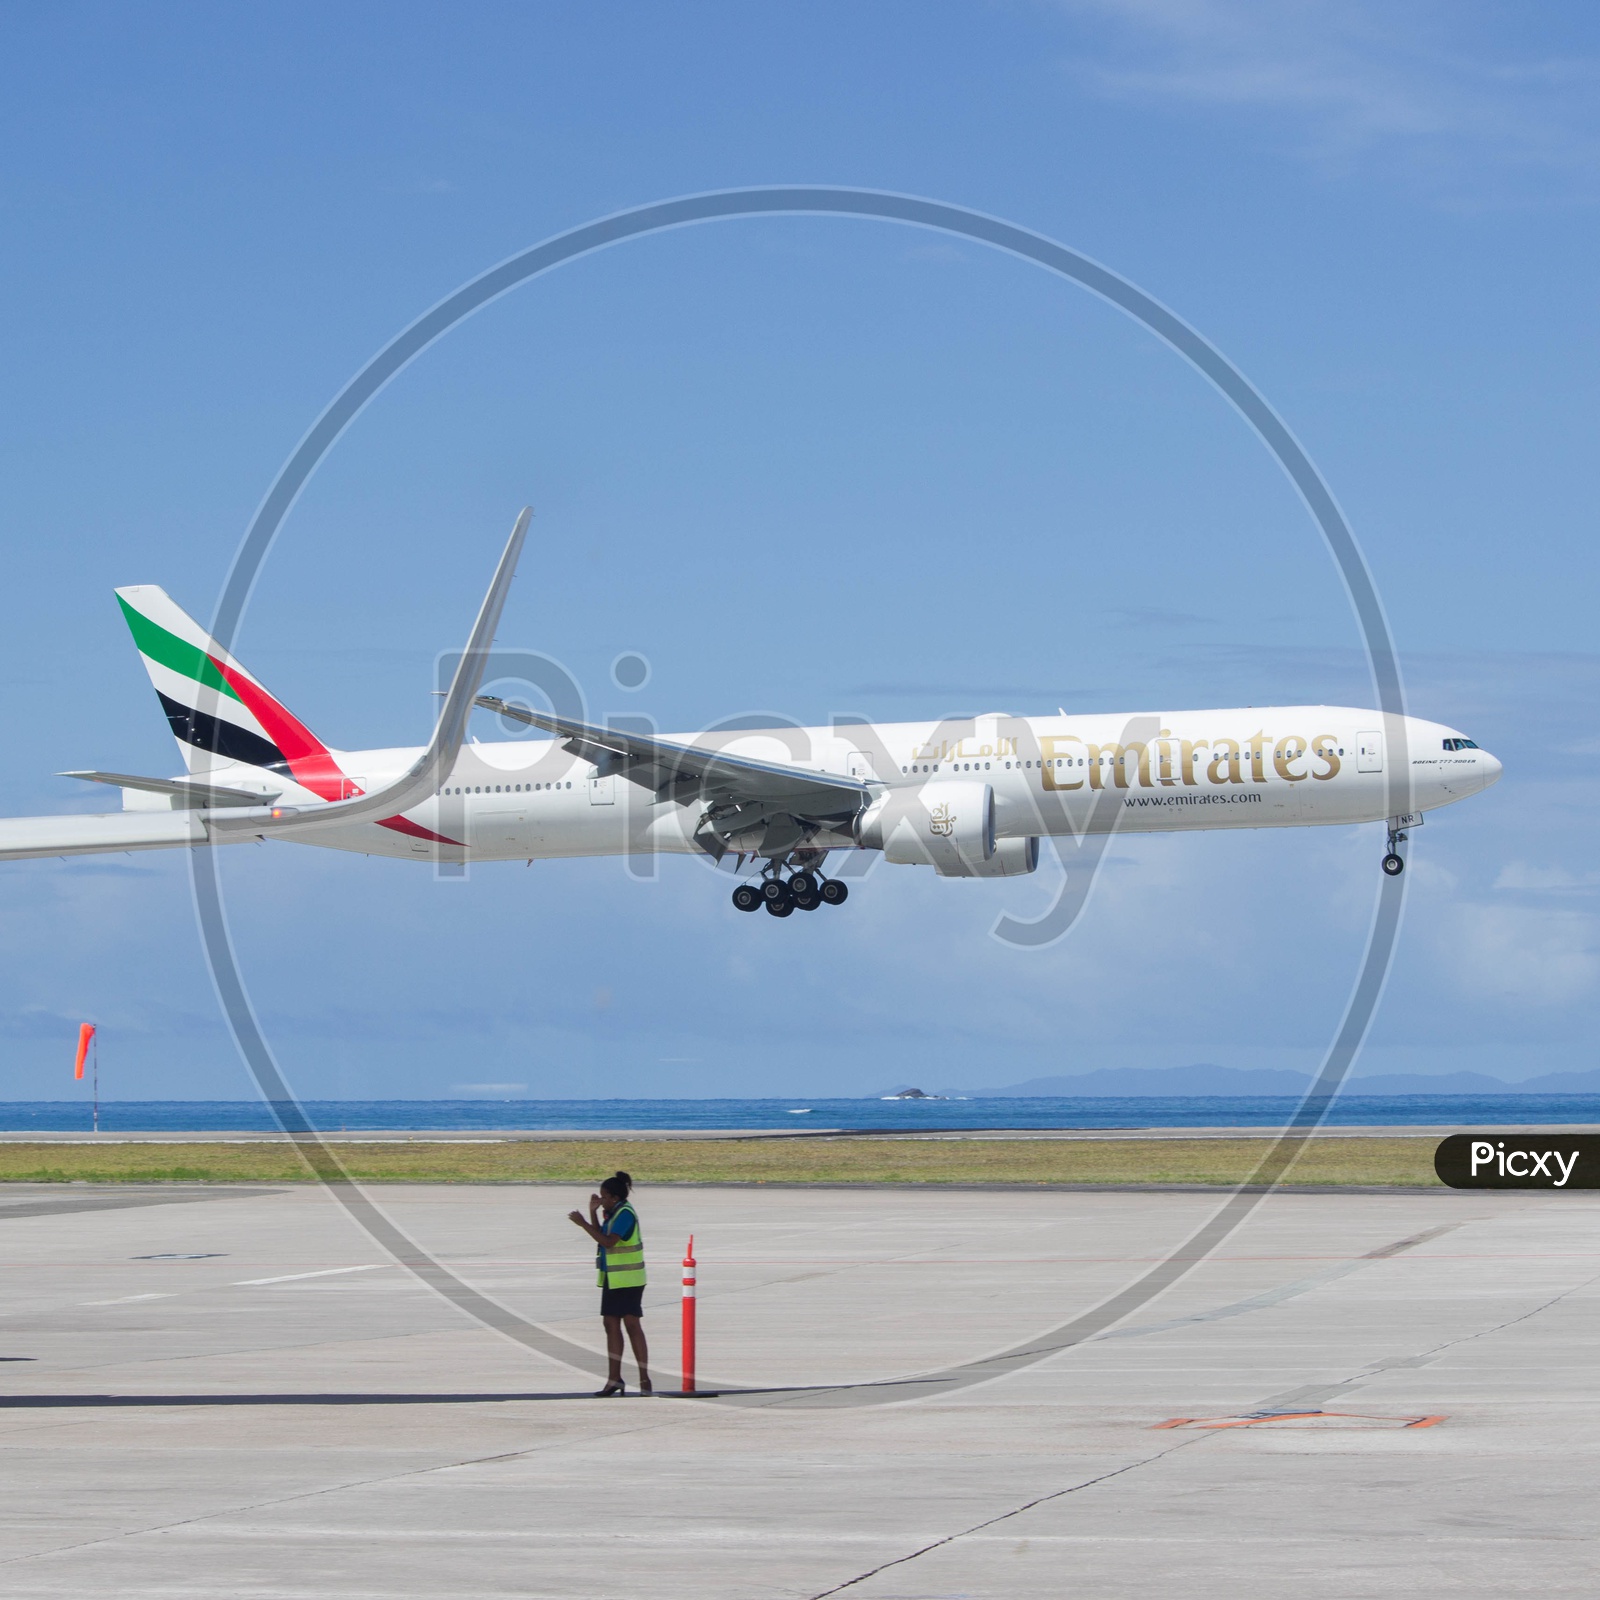 Emirates B777-300ER landing in paradise.